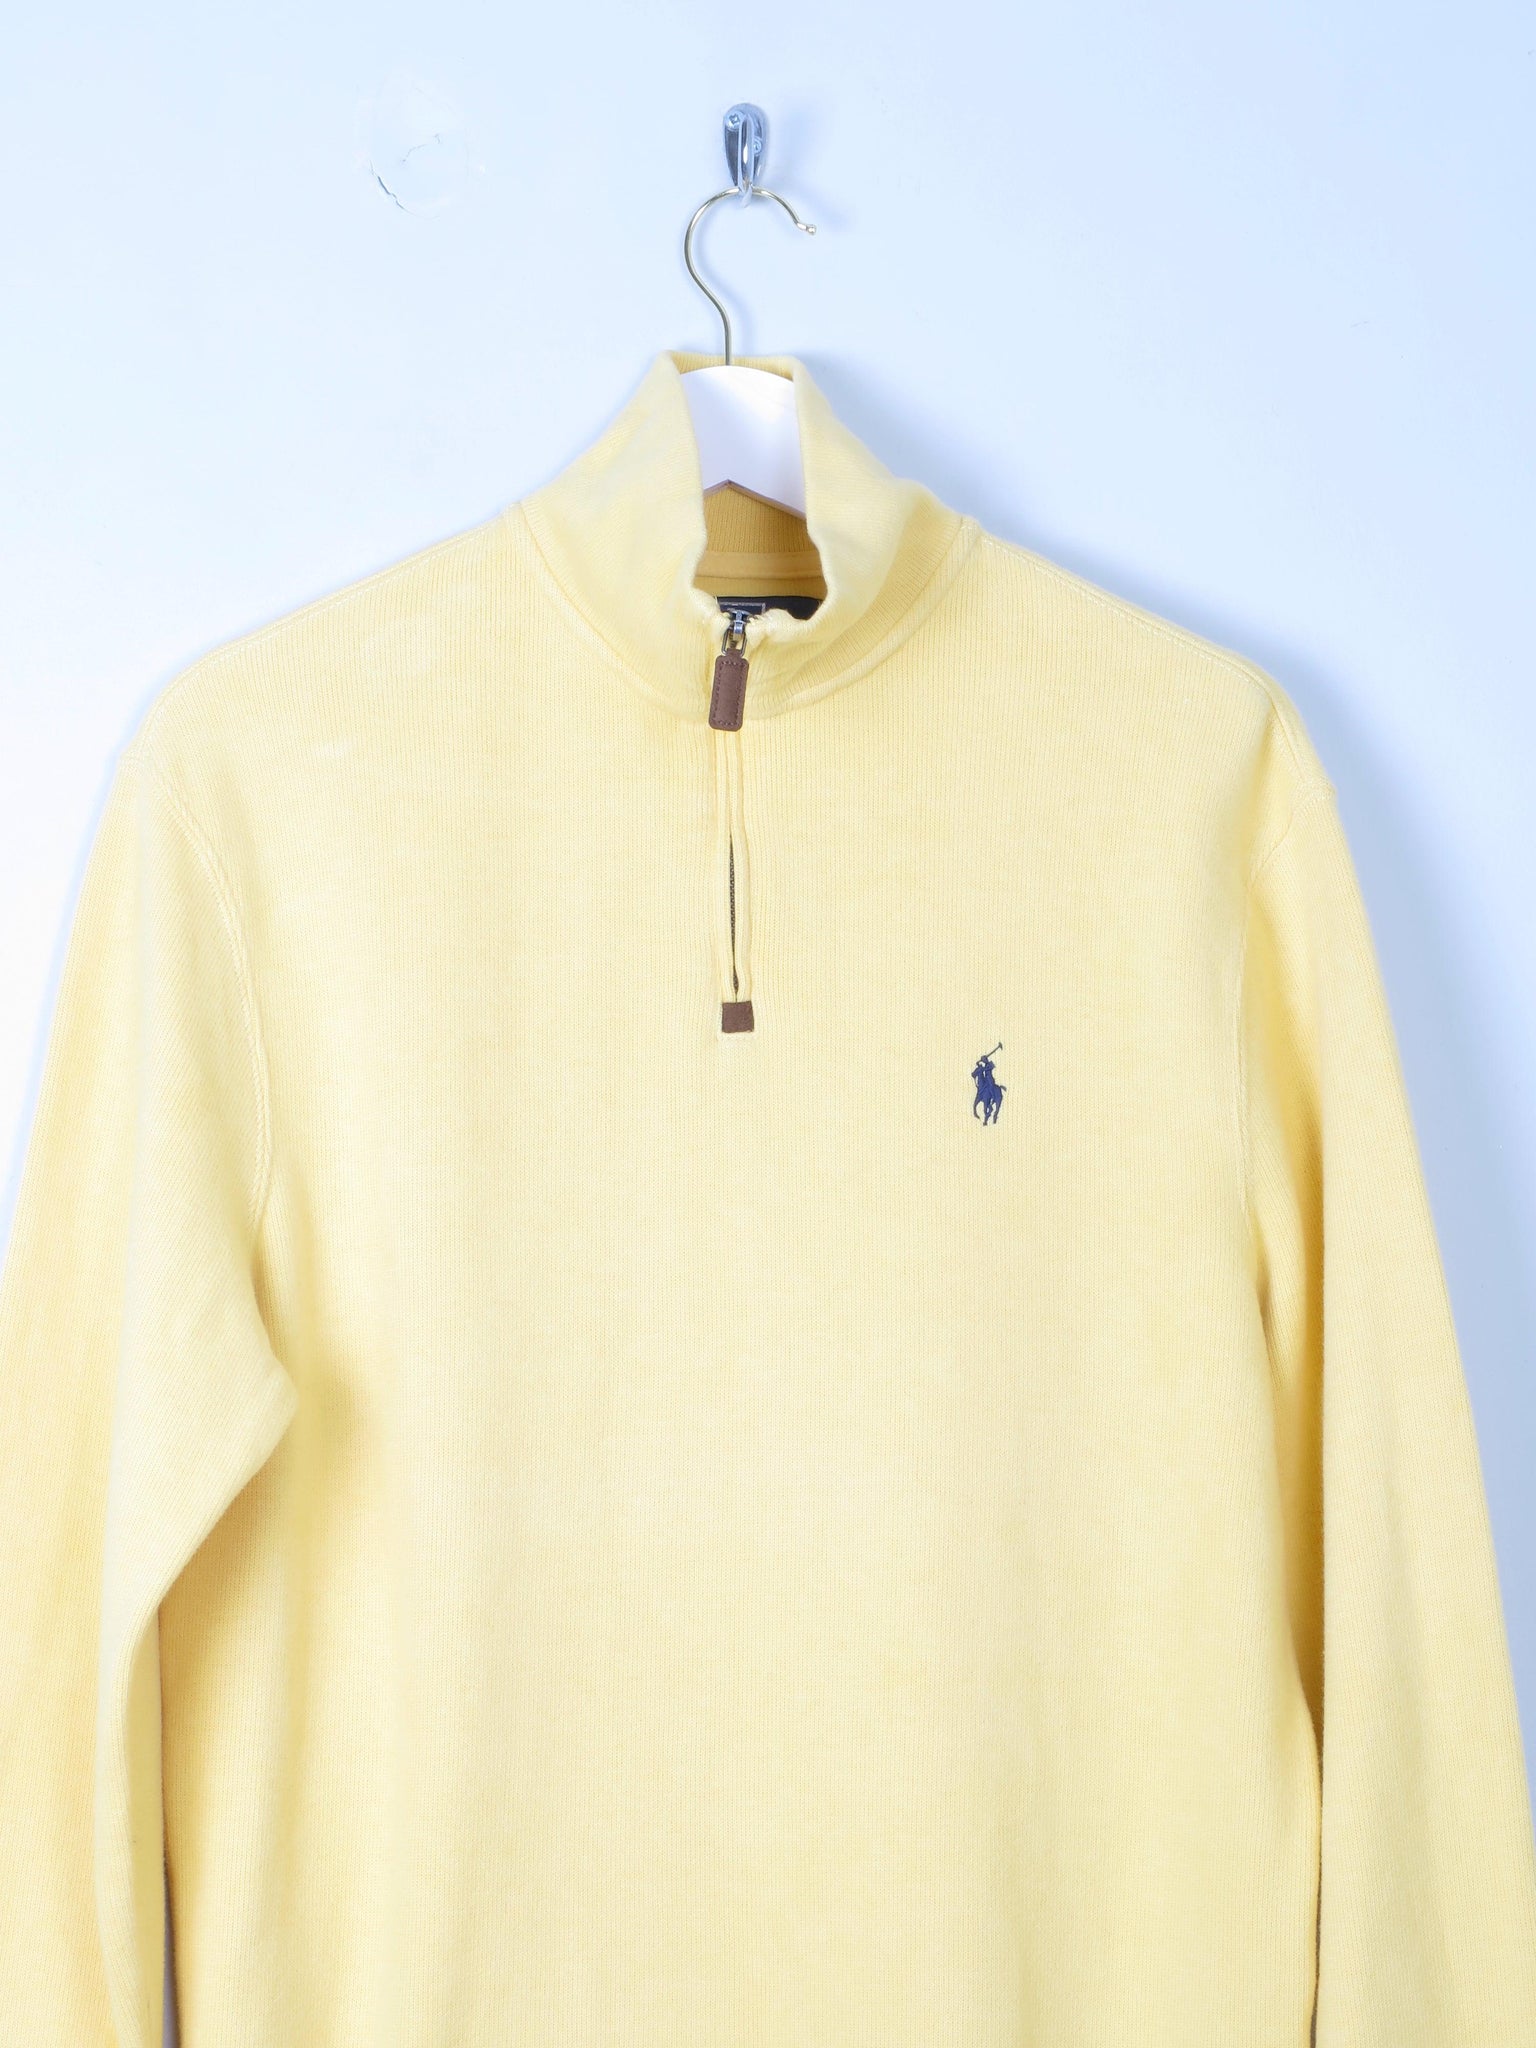 Men's Cotton Polo Ralph Lauren Yellow 1/4 Zip Top S - The Harlequin